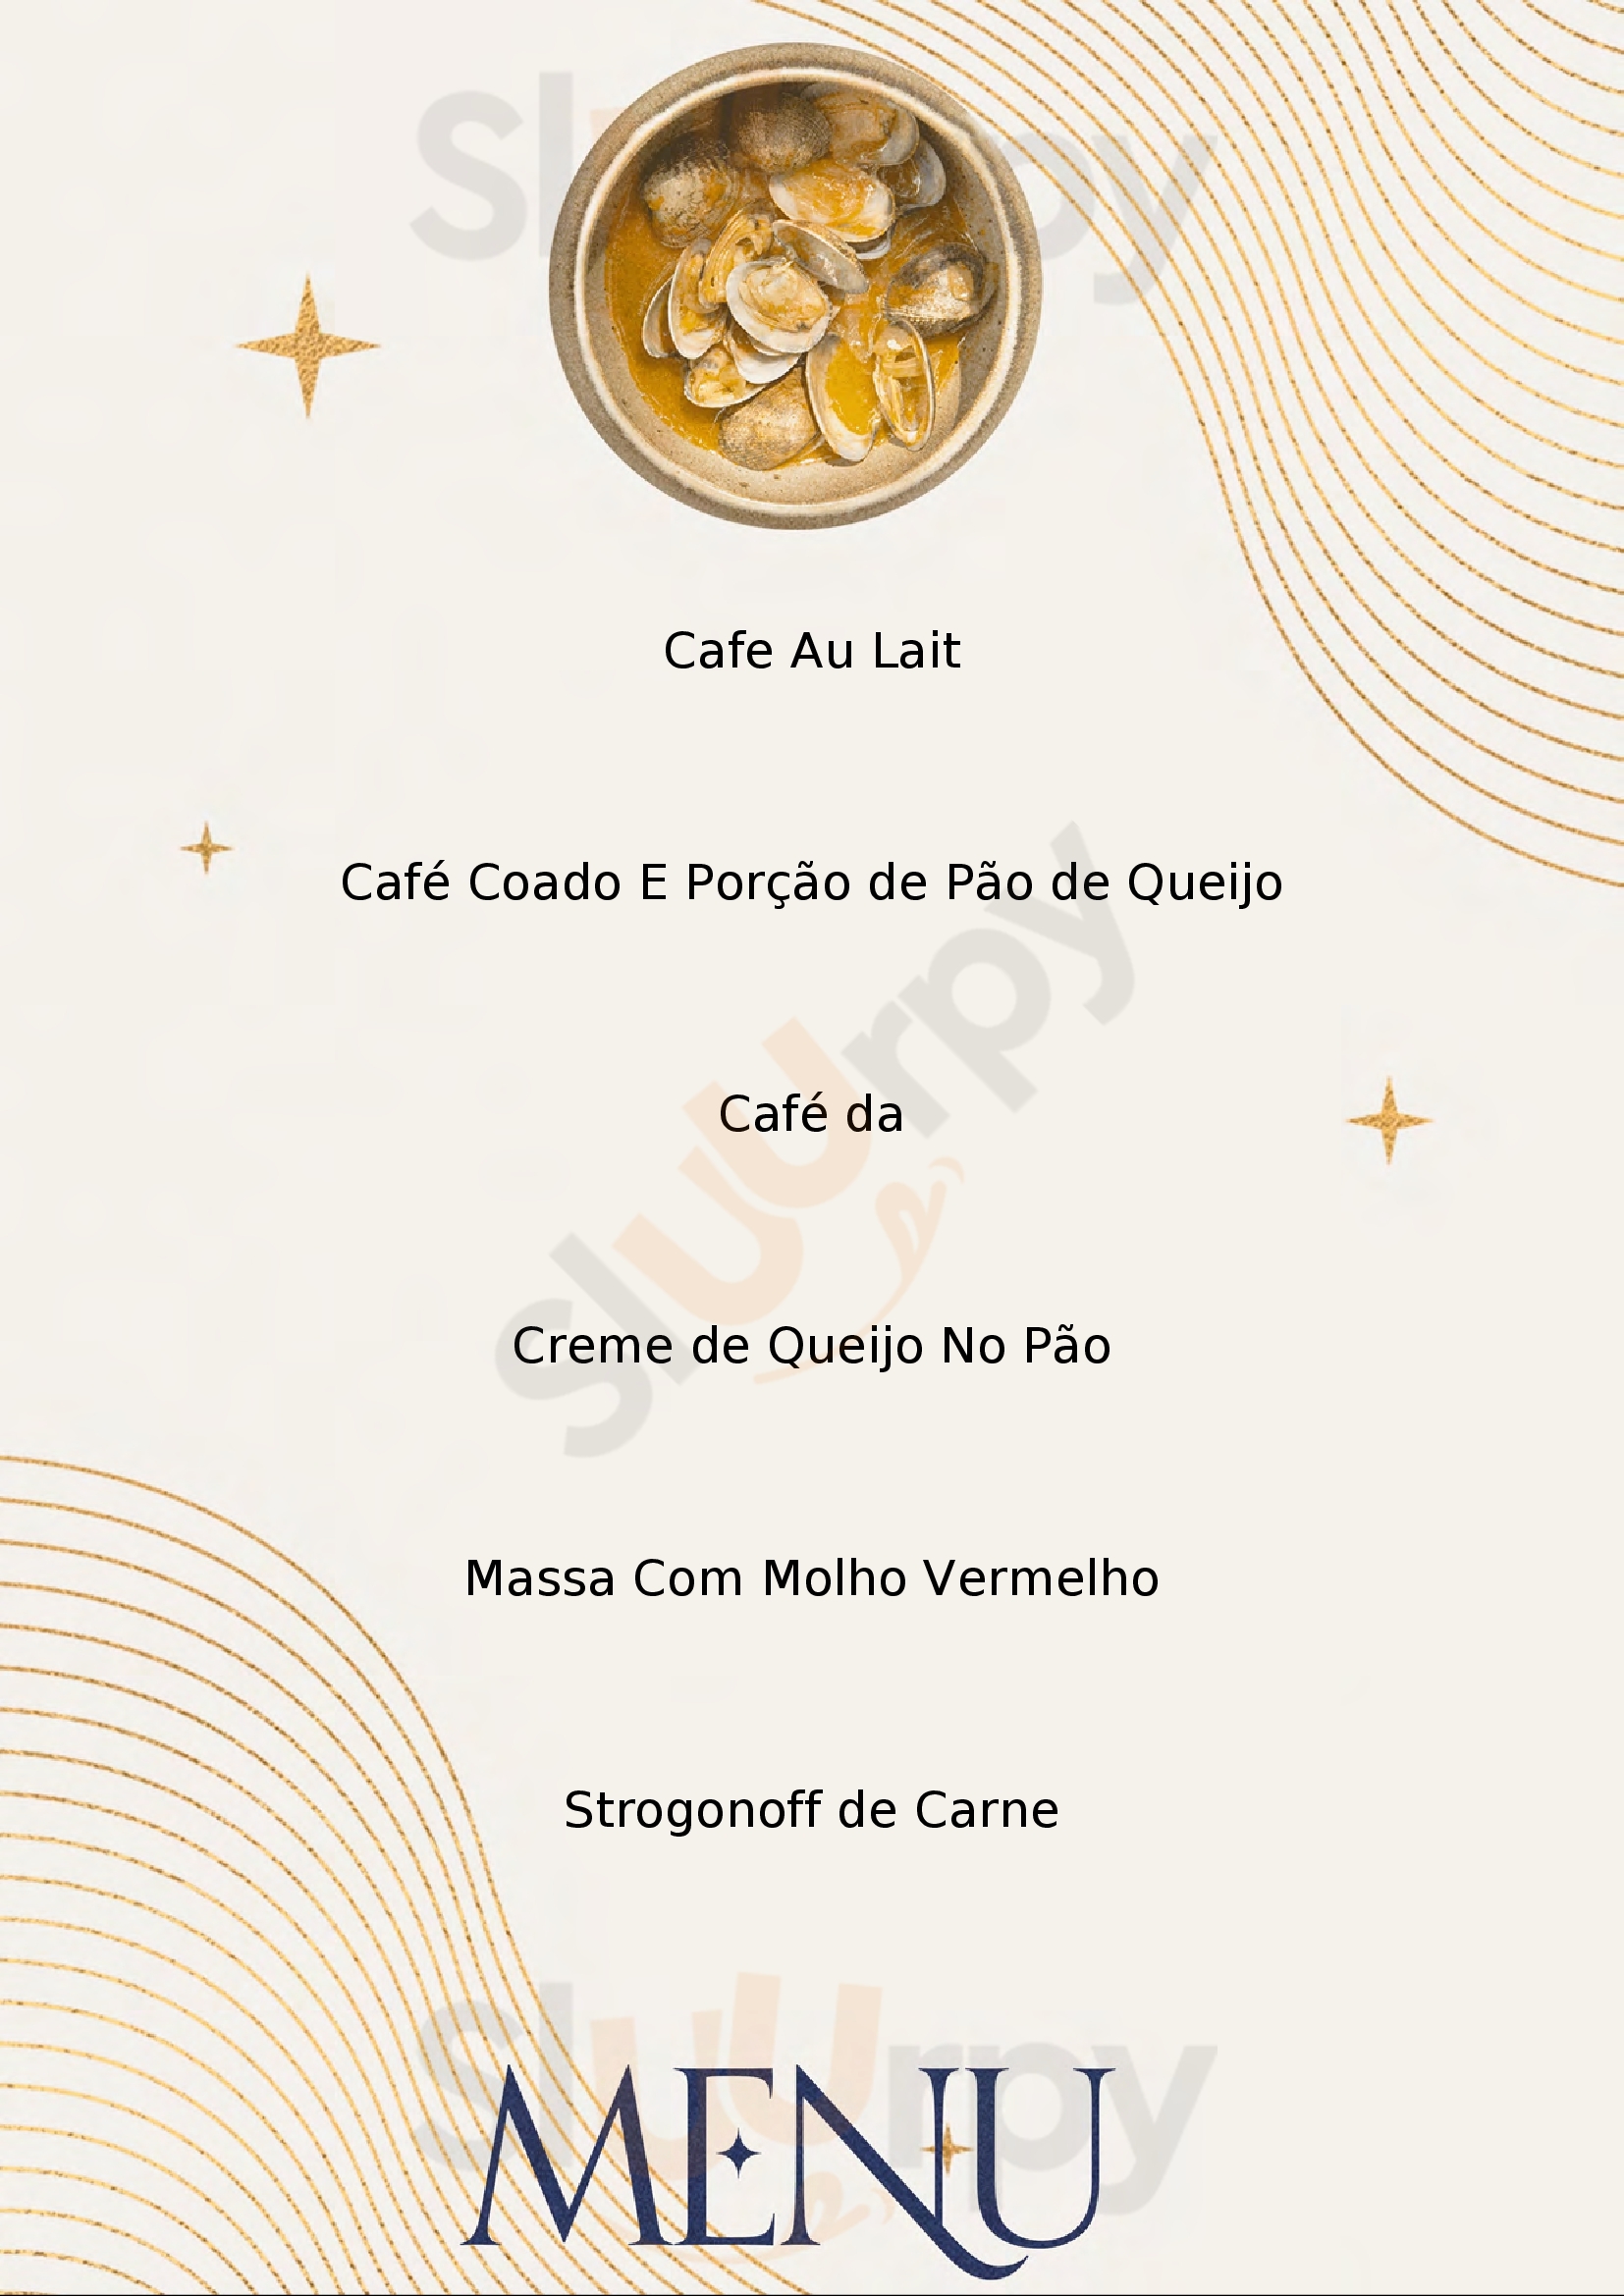 Fran's Cafe - Frei Caneca São Paulo Menu - 1